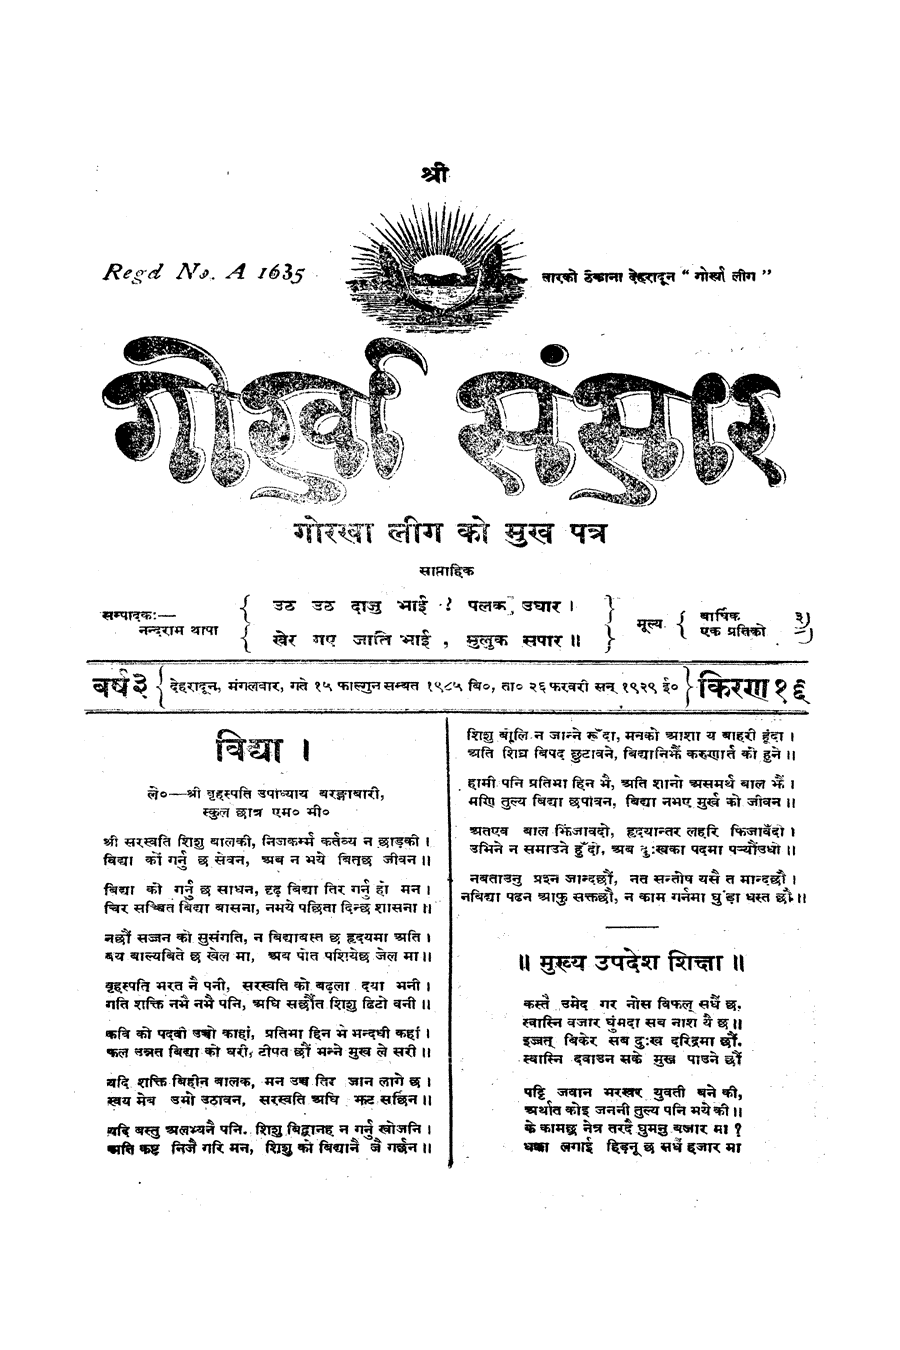 Gorkha Sansar, 26 Feb 1929, page 1